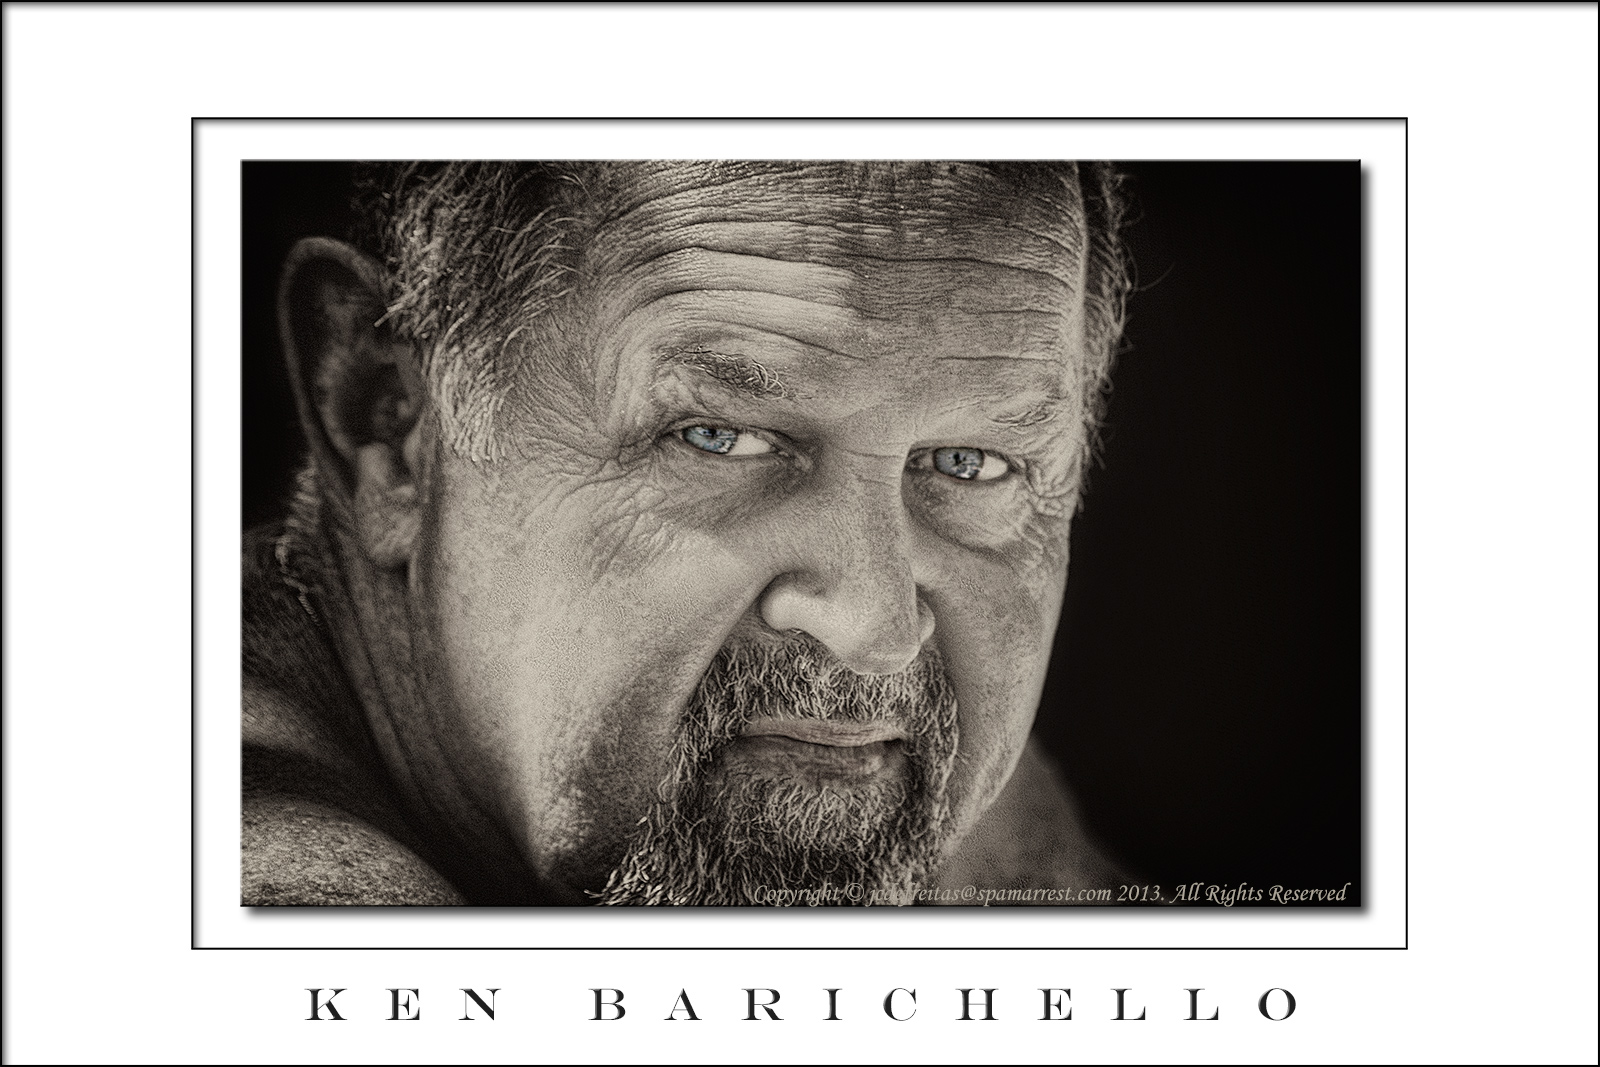 2013 - Ken Barichello